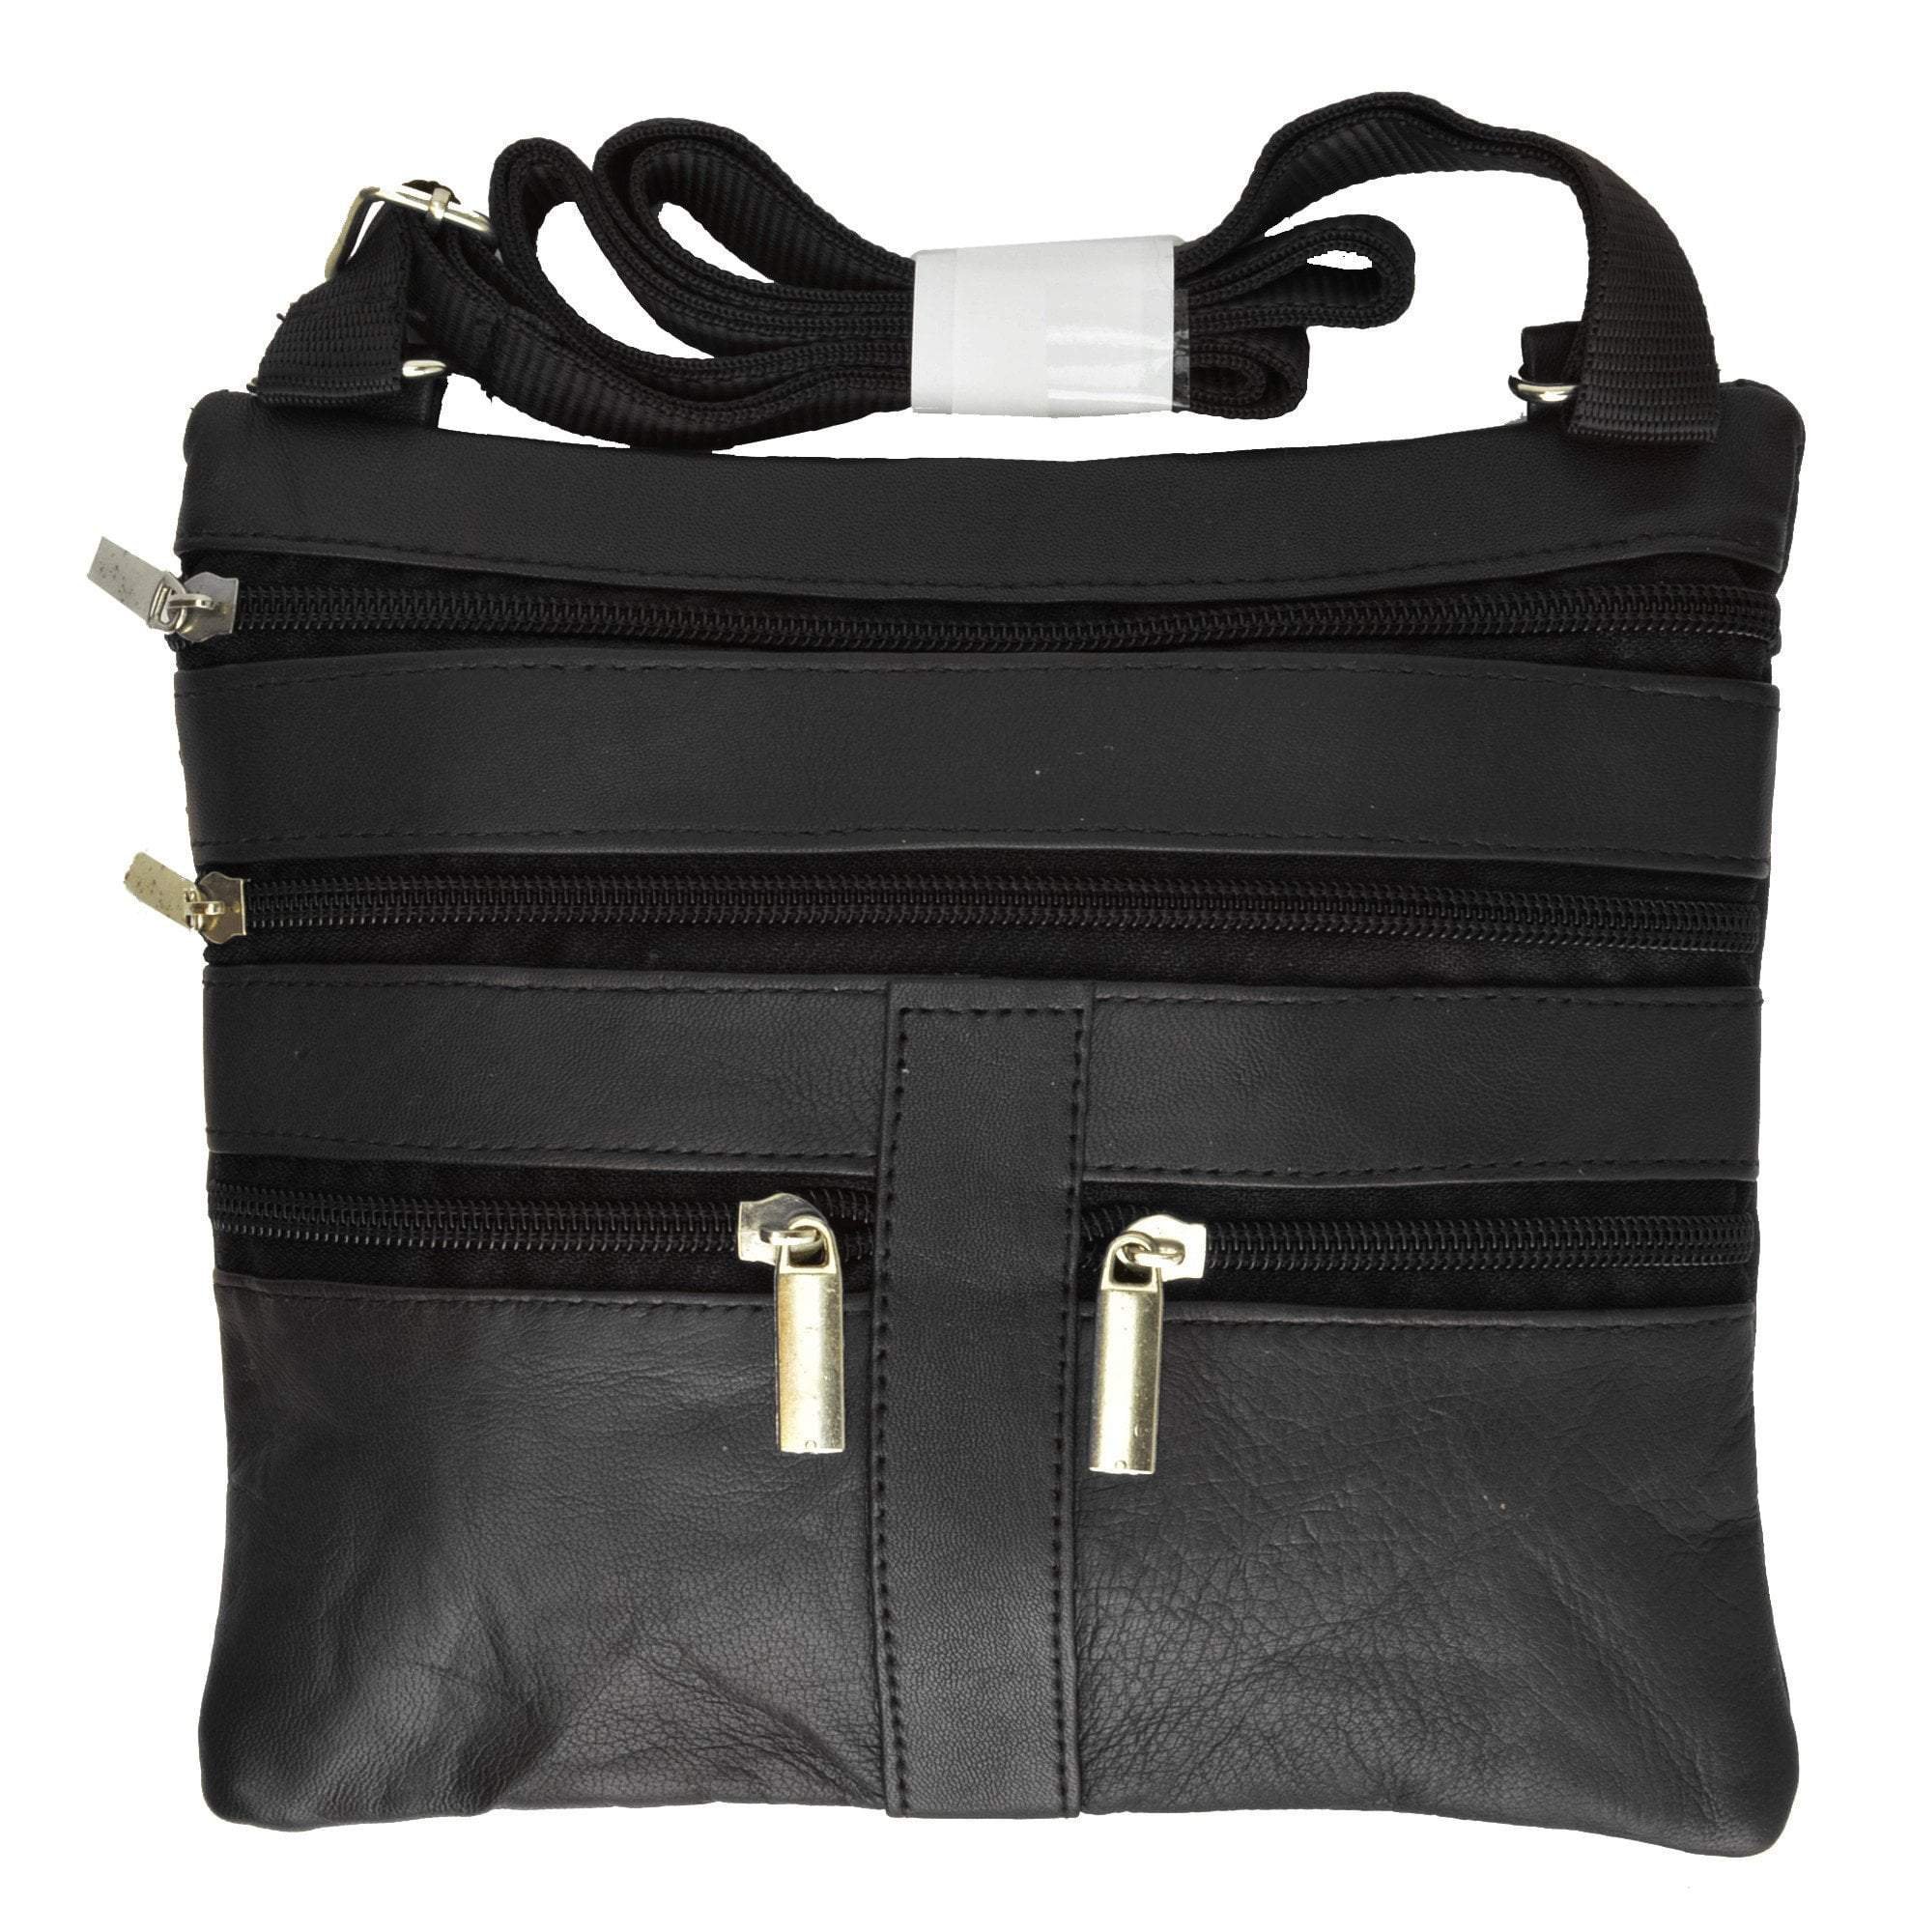 Soft Leather Designer Bolsa Handbags and Purses Women Crossbody Shoulder Bag  High Quality Brand Shopper Messenger Sac Feminina - AliExpress